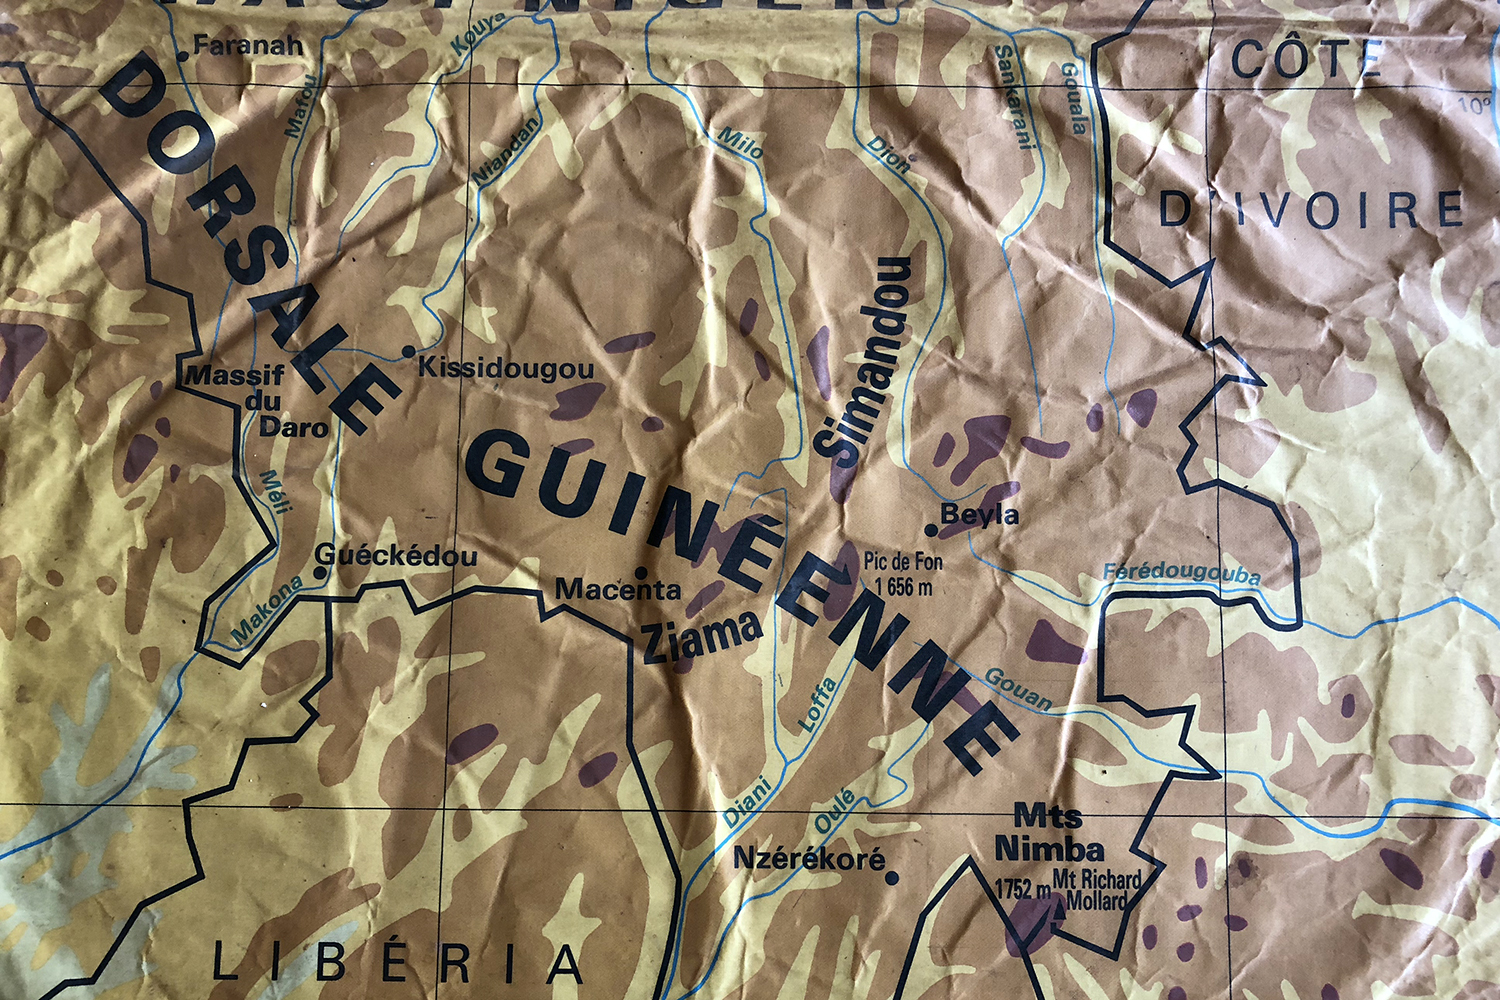 Le sud de la région de la Guinée forestière où nous nous sommes rendus sur la carte de la Guinée posée sur la table de réunion des gardes forestiers des monts Nimba.